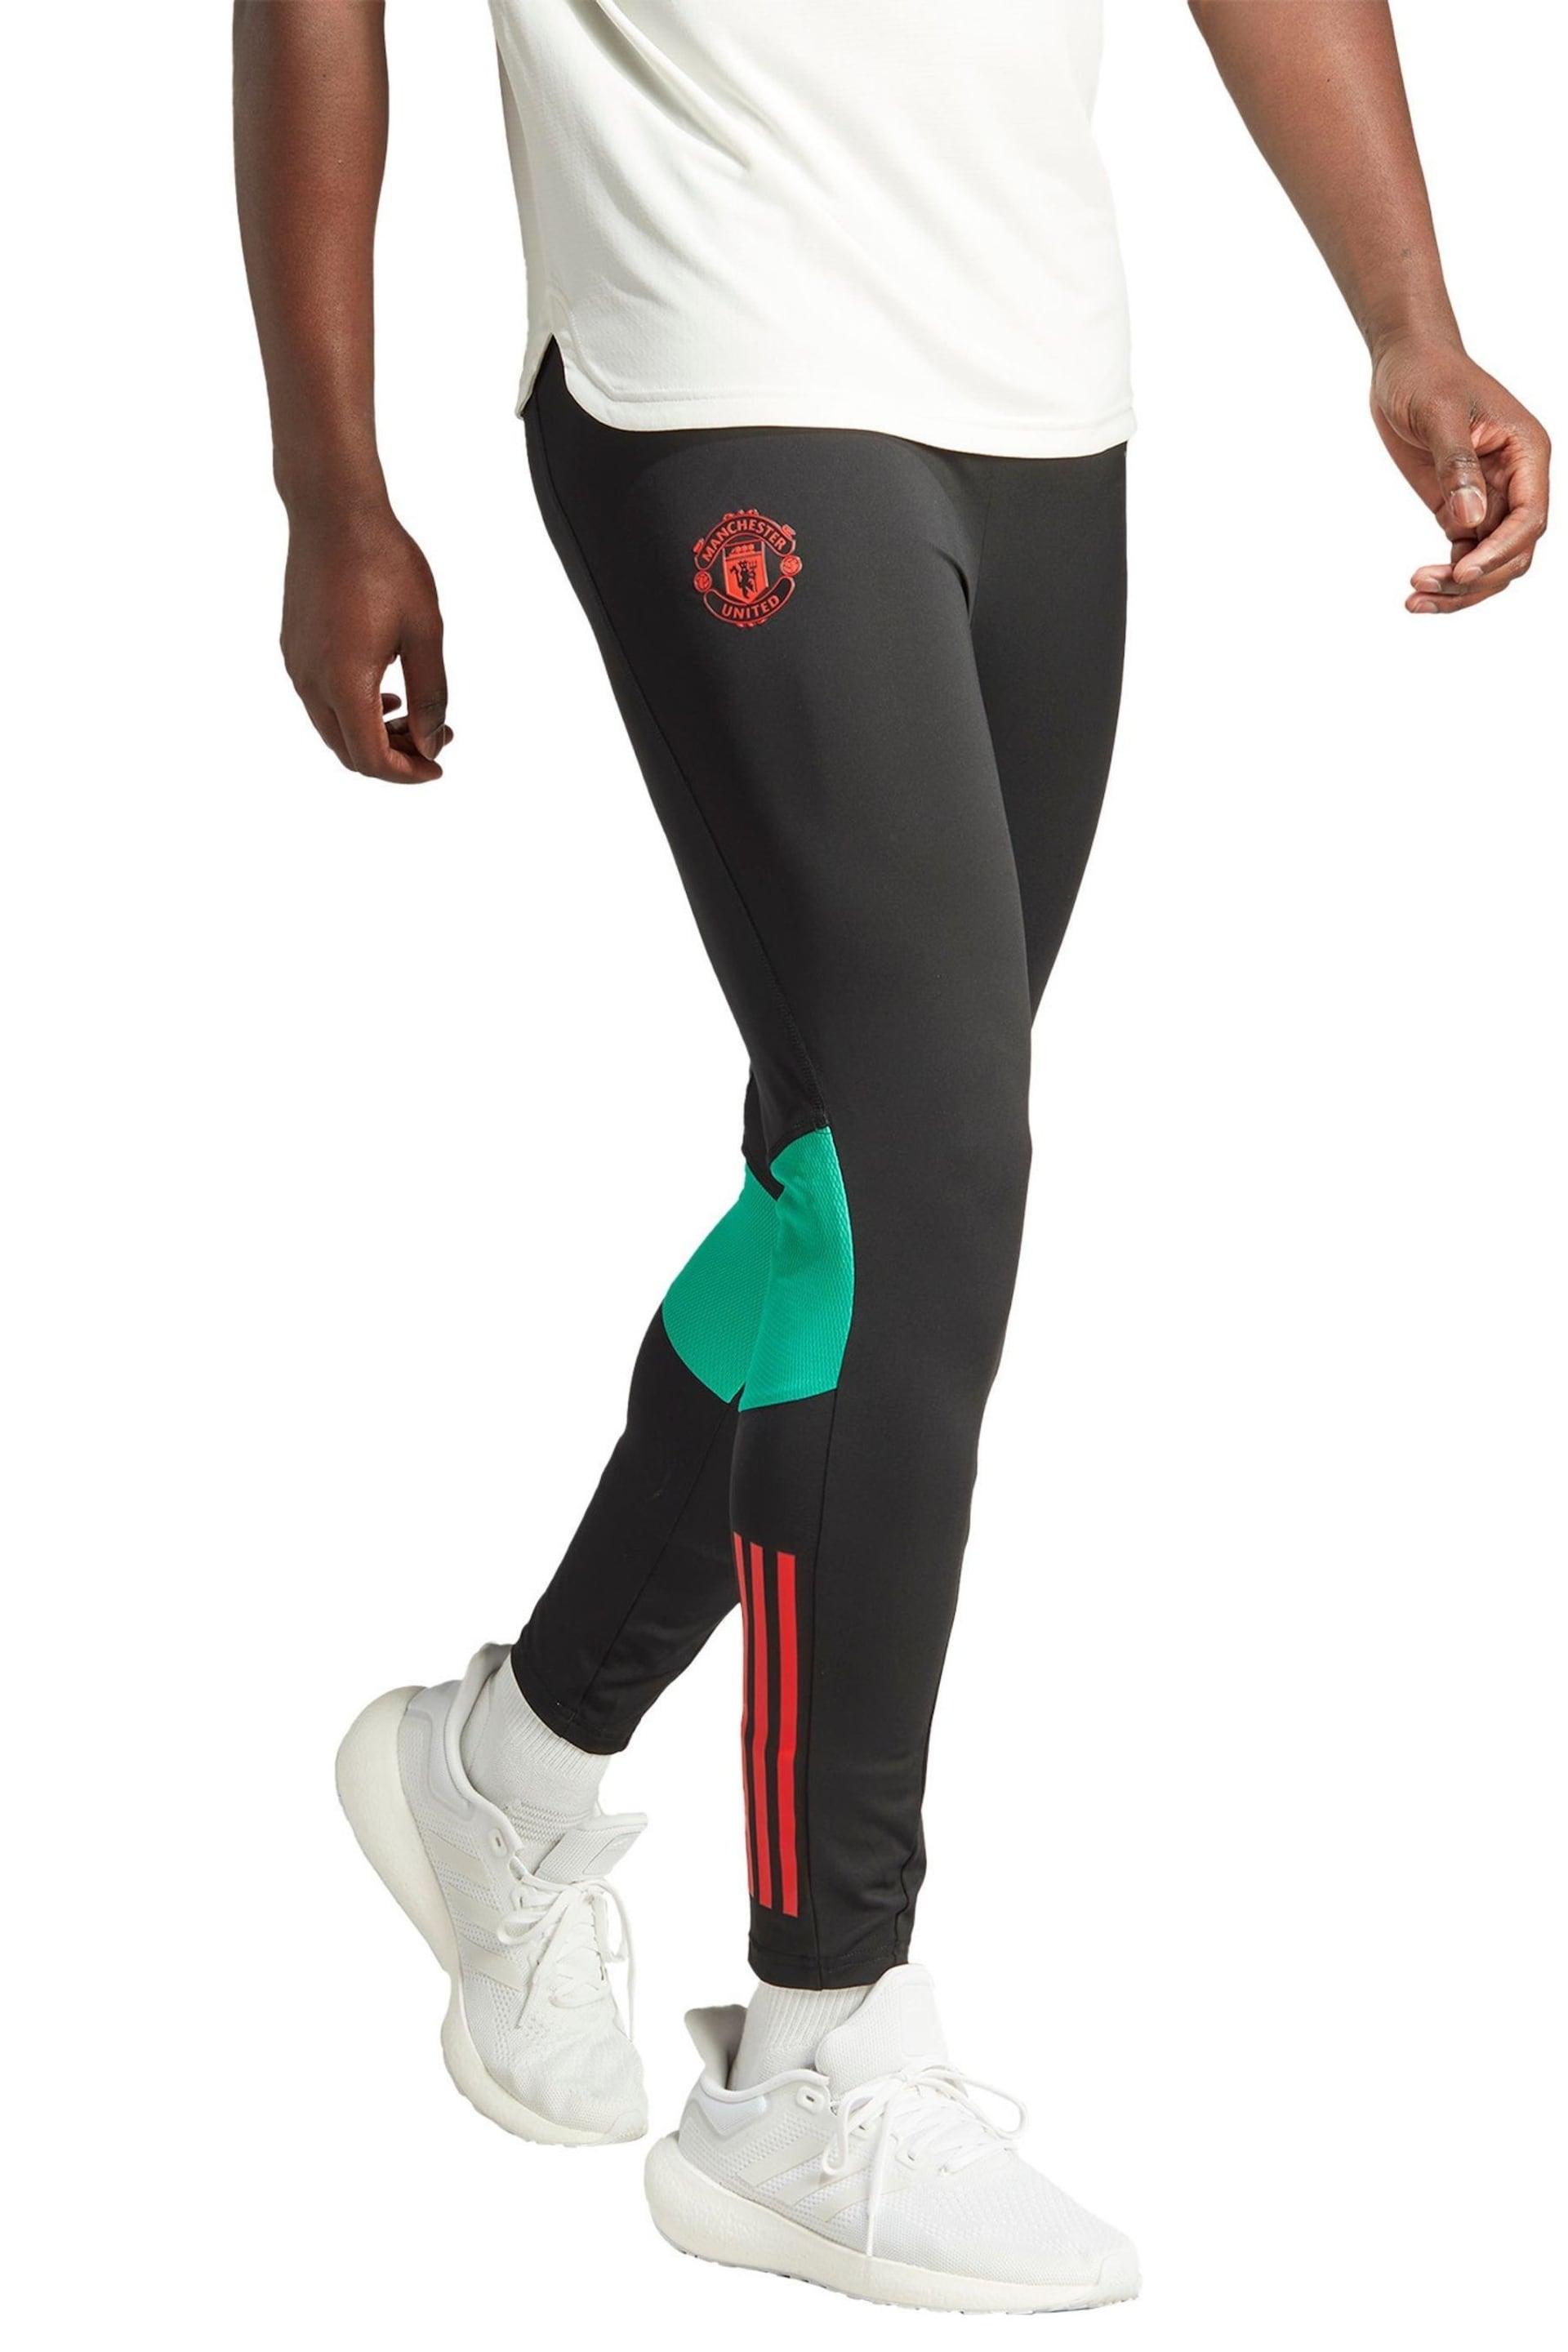 adidas Black Manchester United Pro Training Joggers - Image 1 of 4